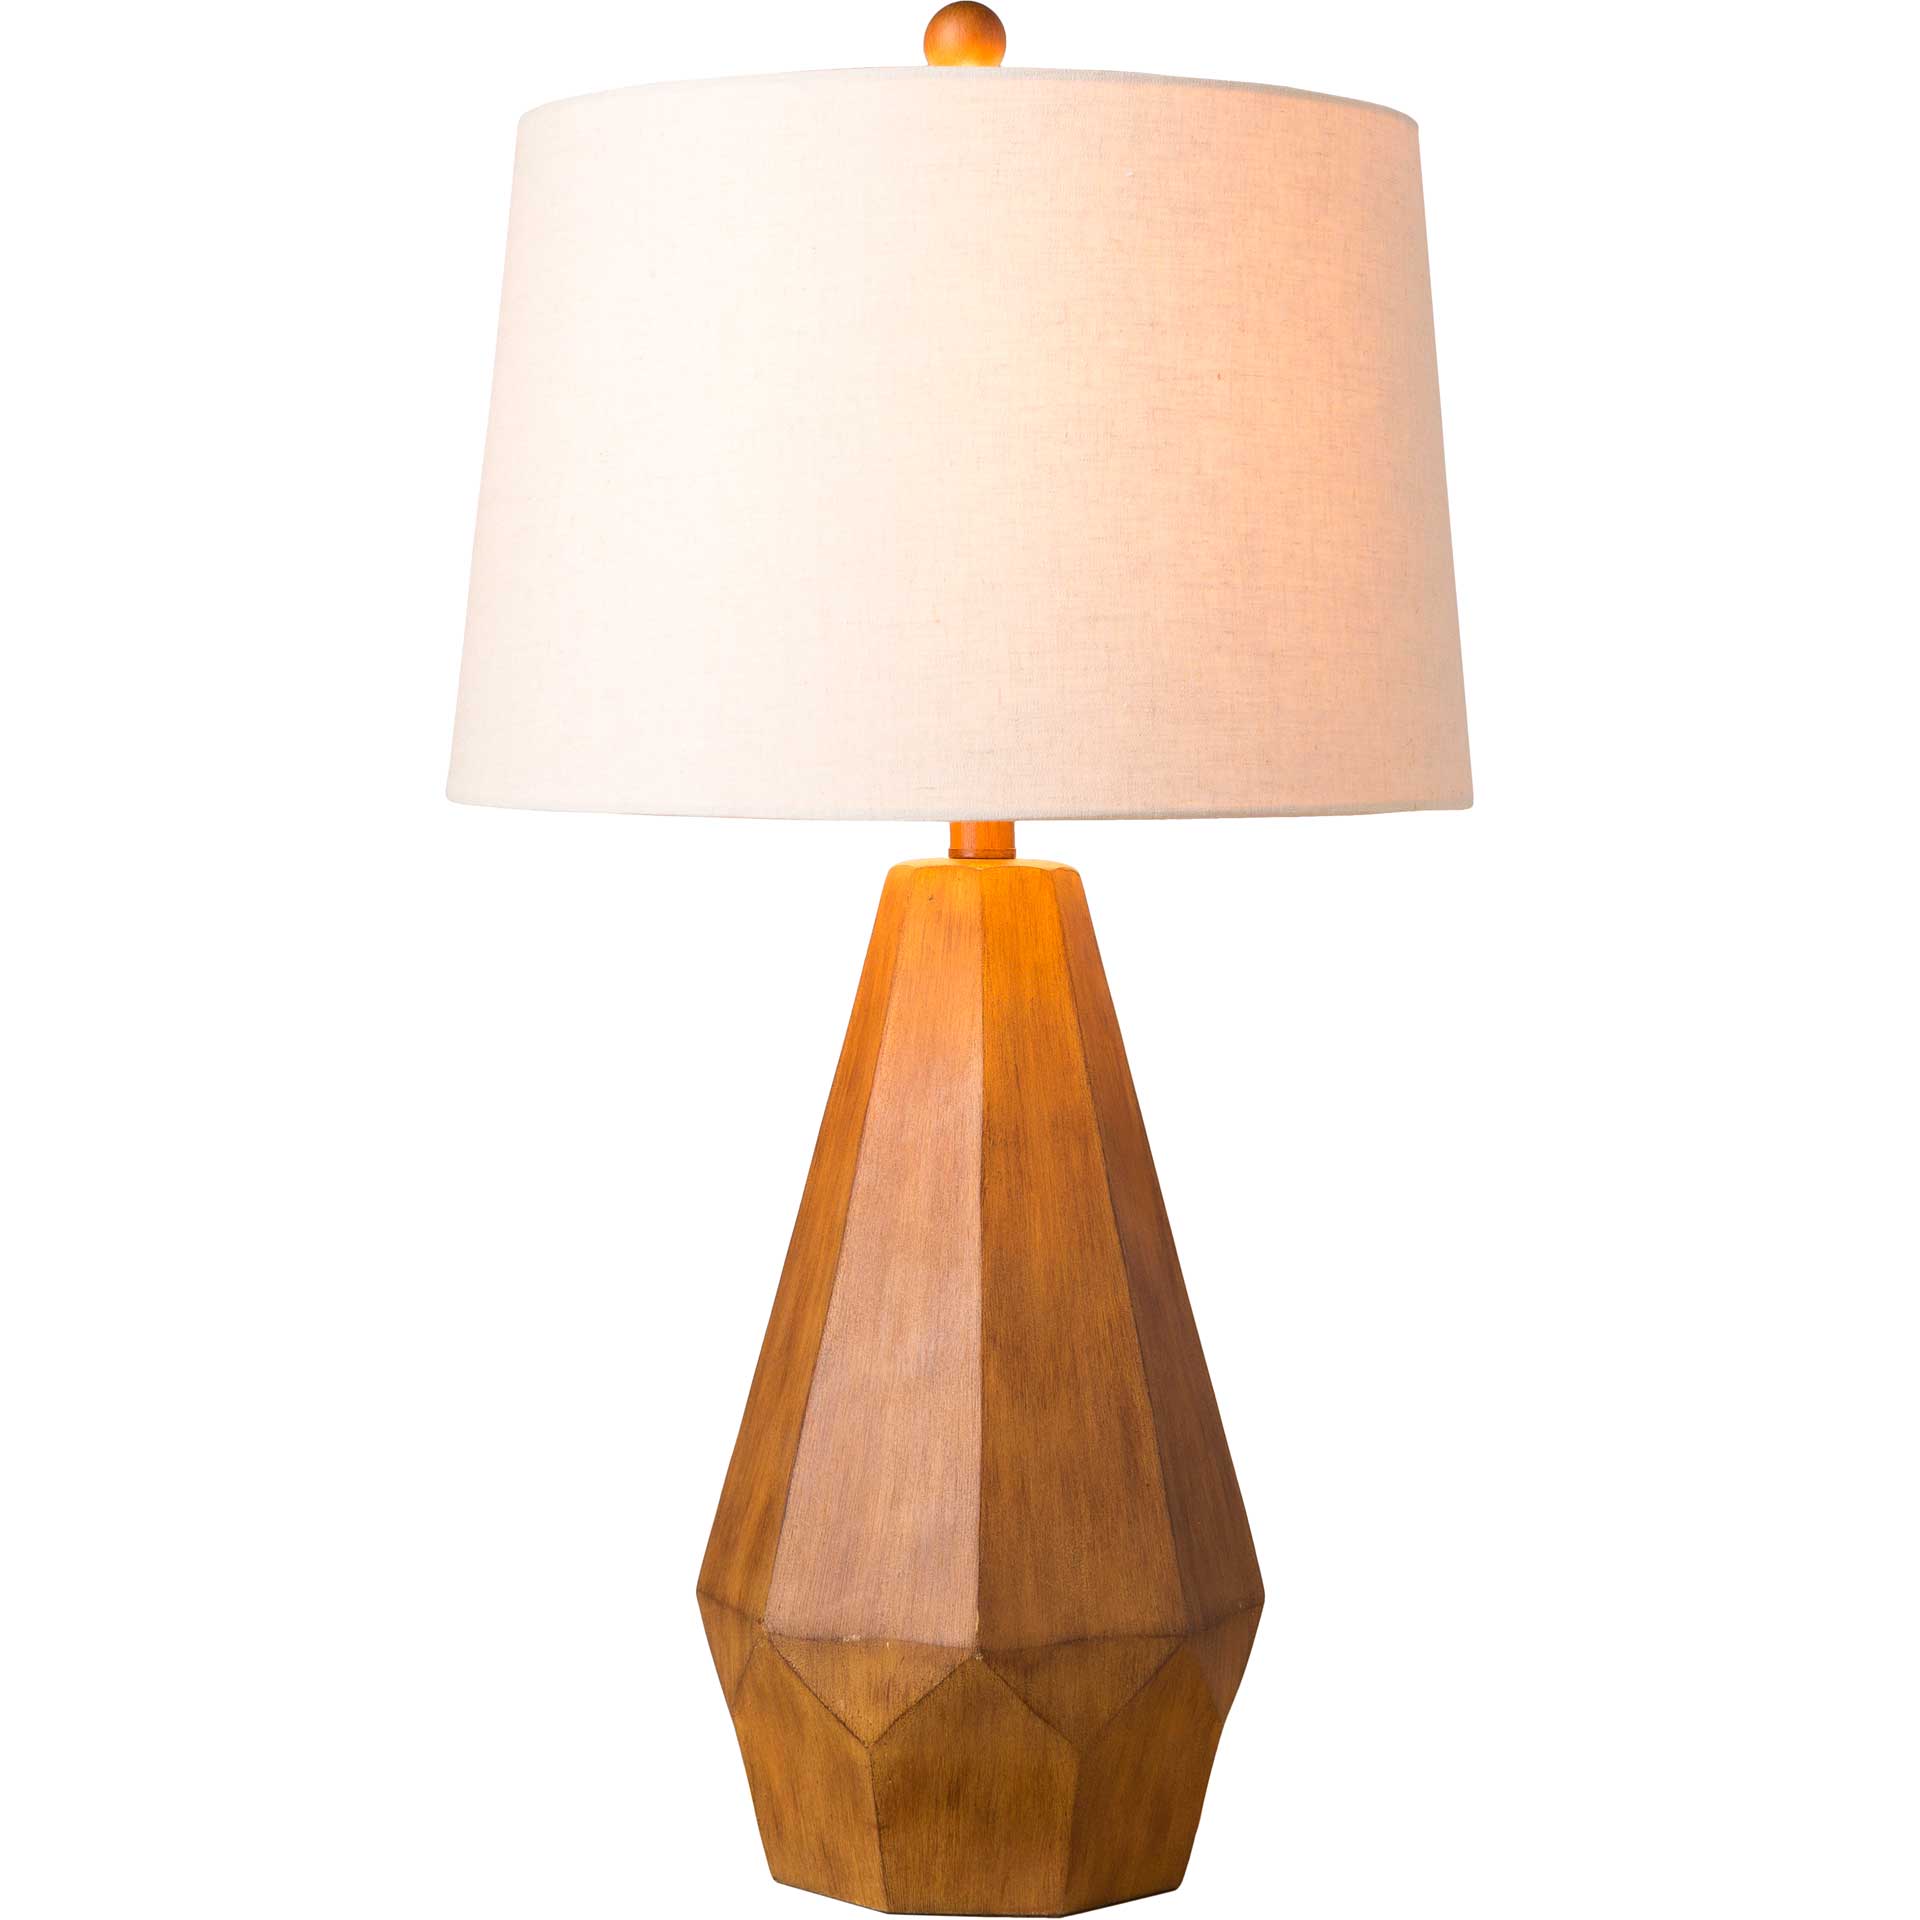 Dream Table Lamp Burnt Orange/Ivory/Camel